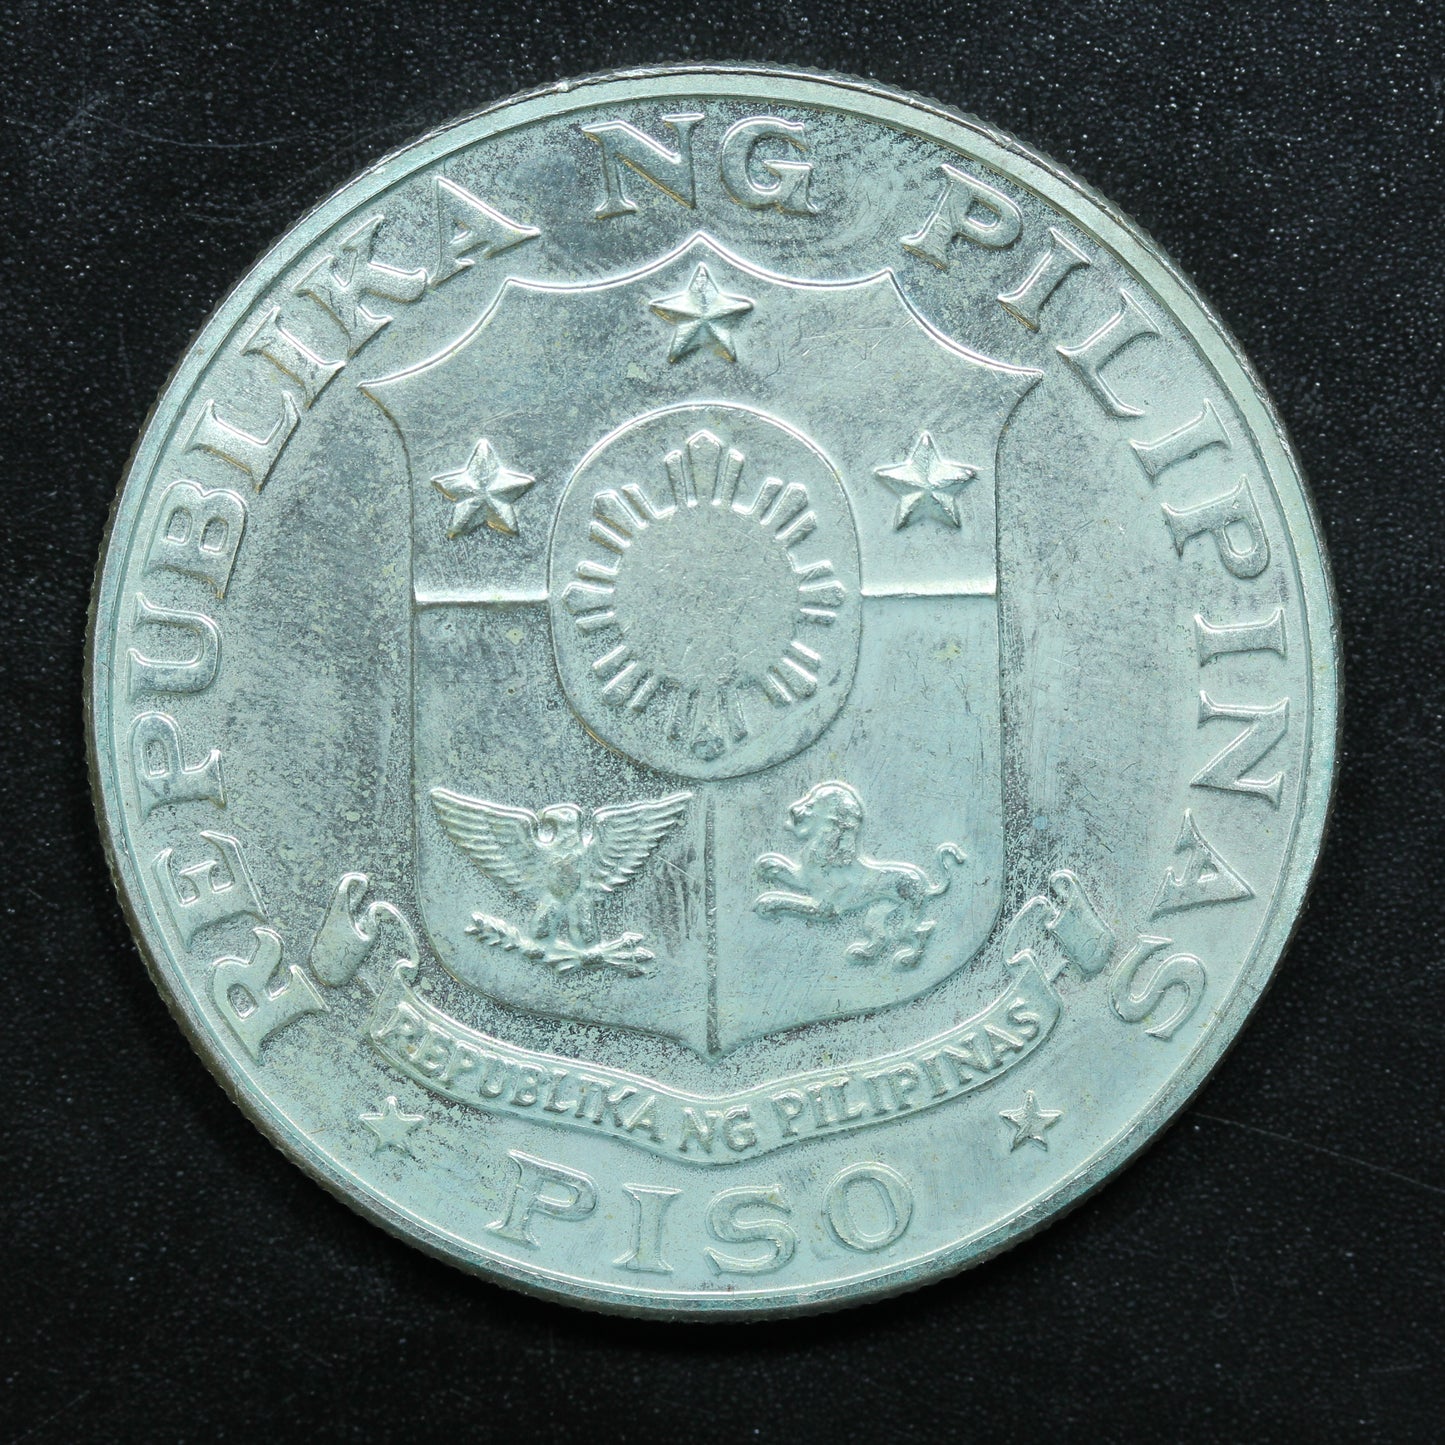 1969 Piso Peso Philippines Silver Coin 100th Anniv. Emilio Aguinaldo KM# 201